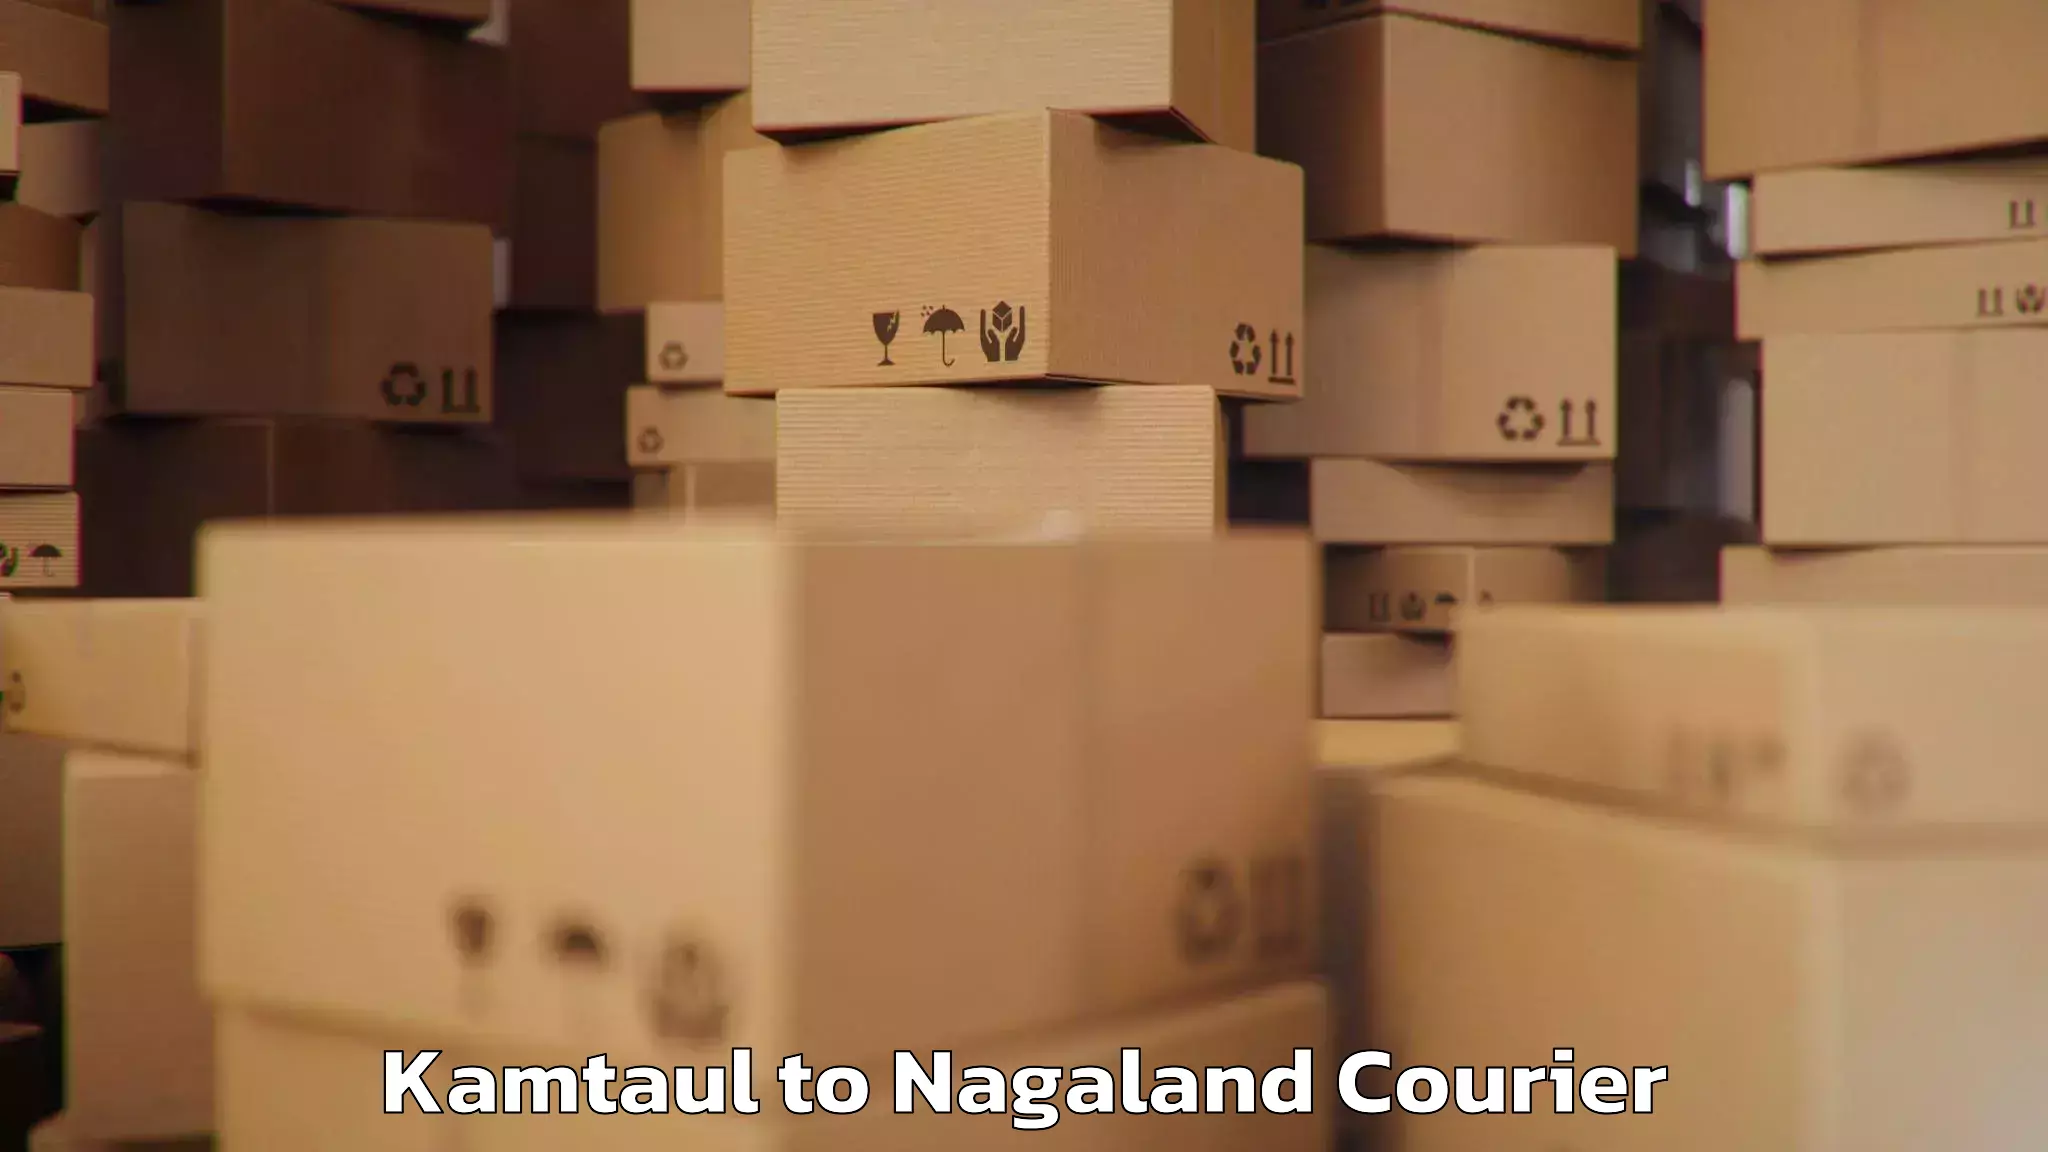 Door-to-door baggage service Kamtaul to Nagaland